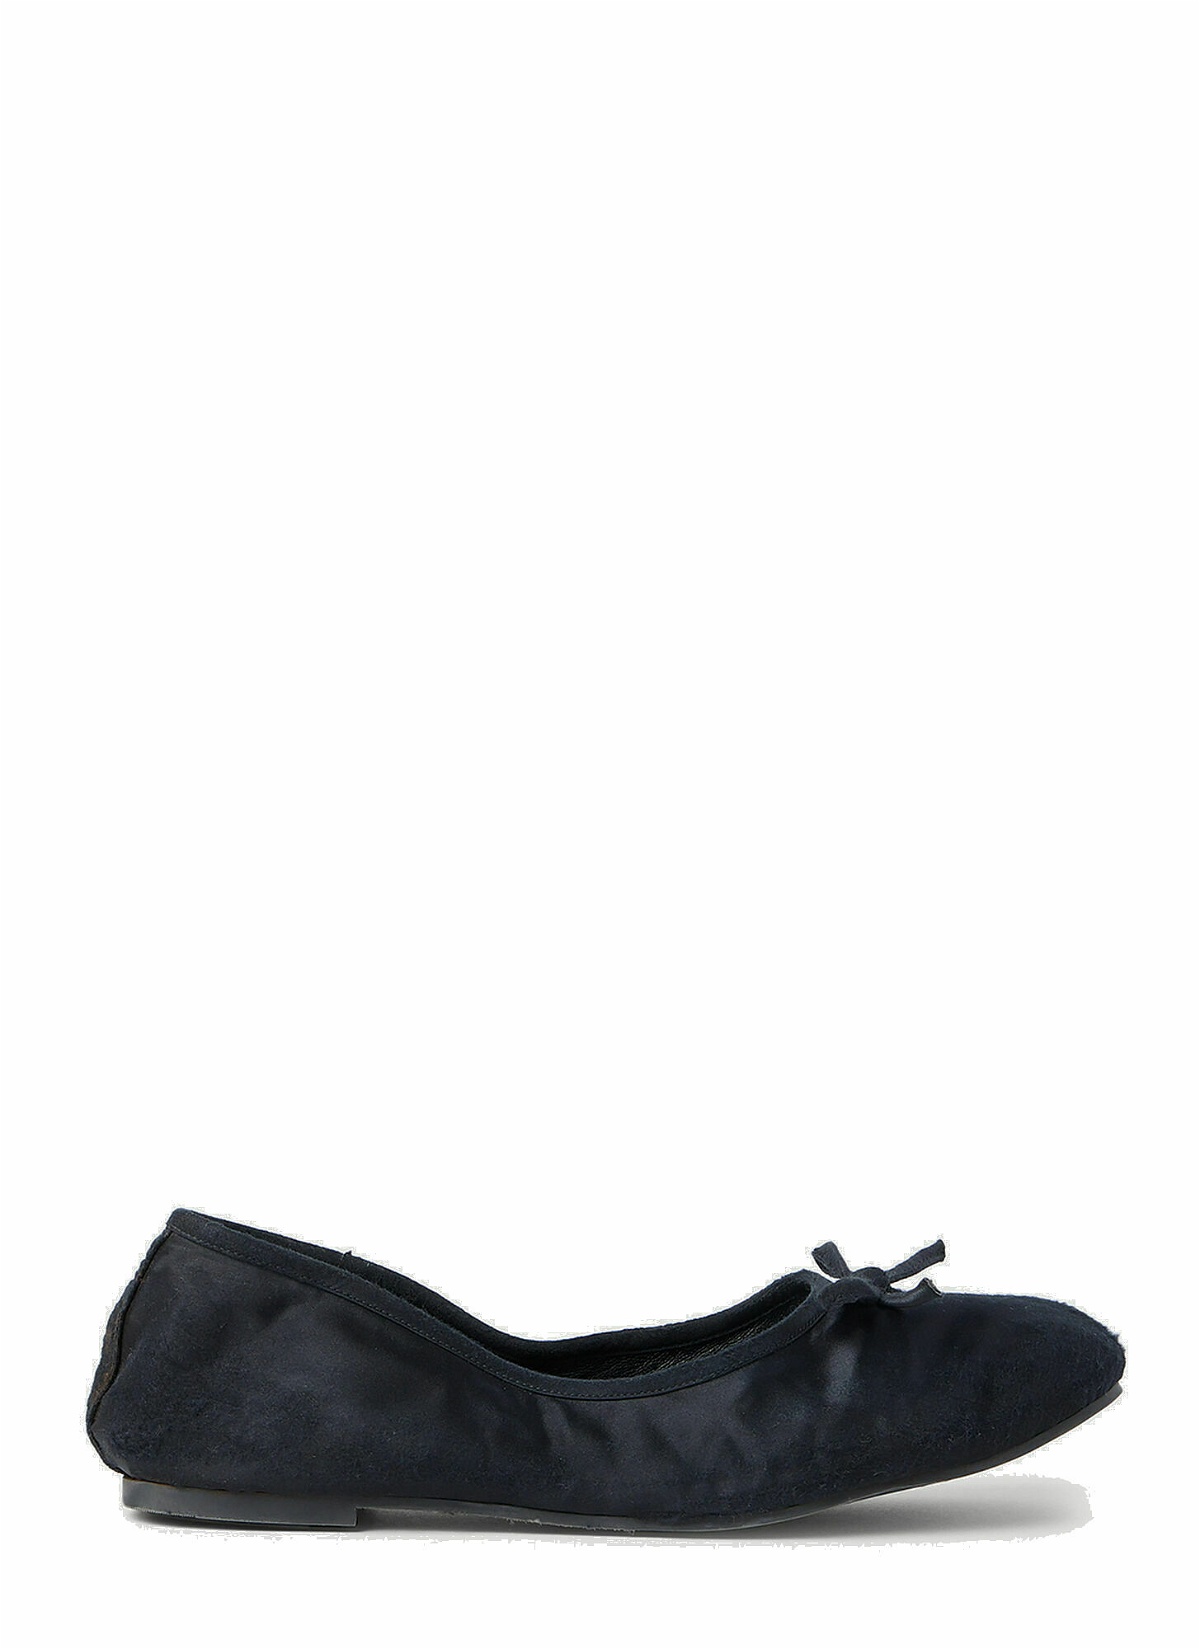 Photo: Balenciaga - Leopold Ballerina Shoes in Black